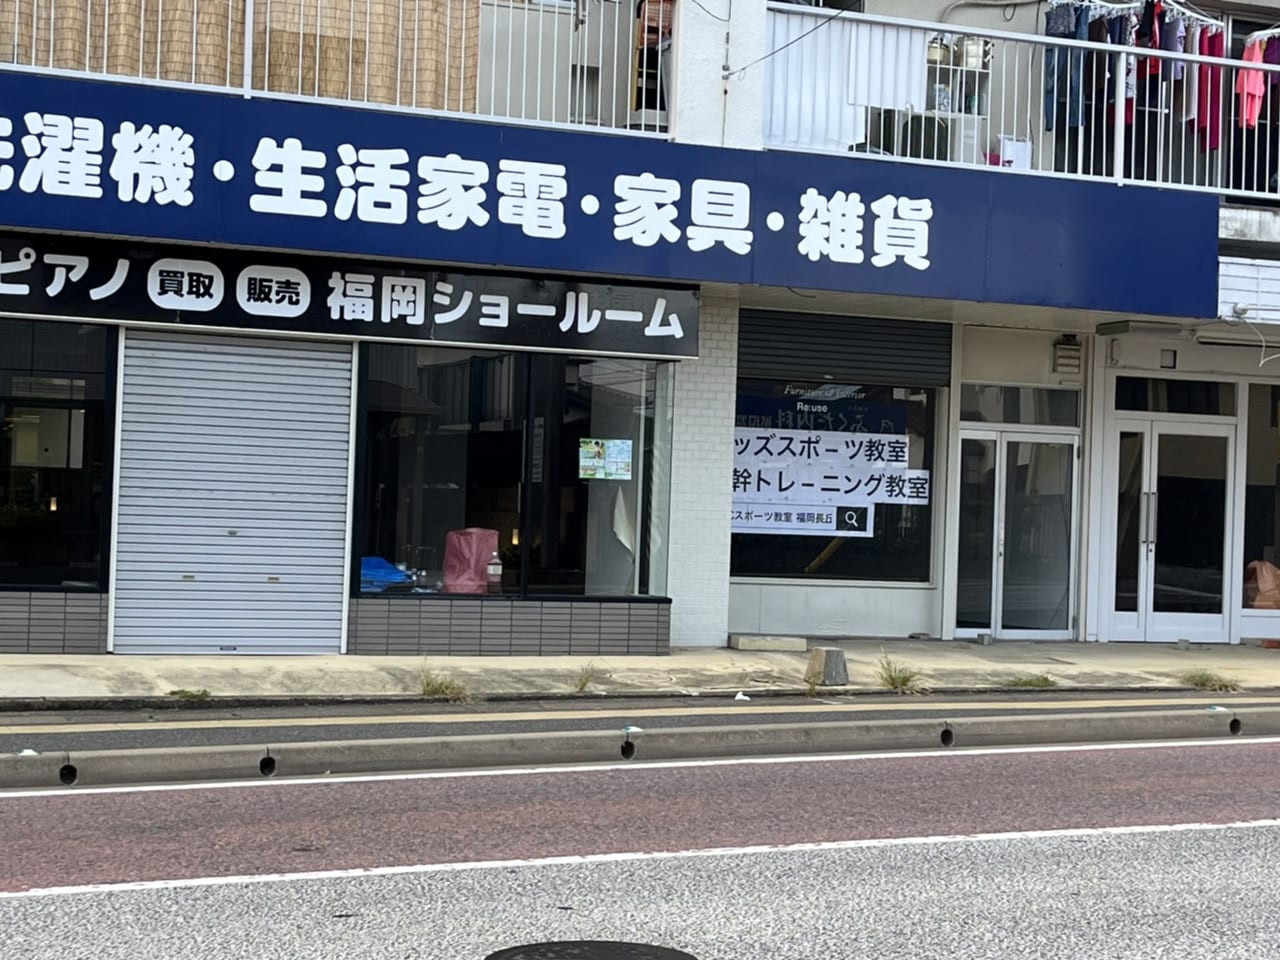 JPCスポーツ教室福岡長丘店